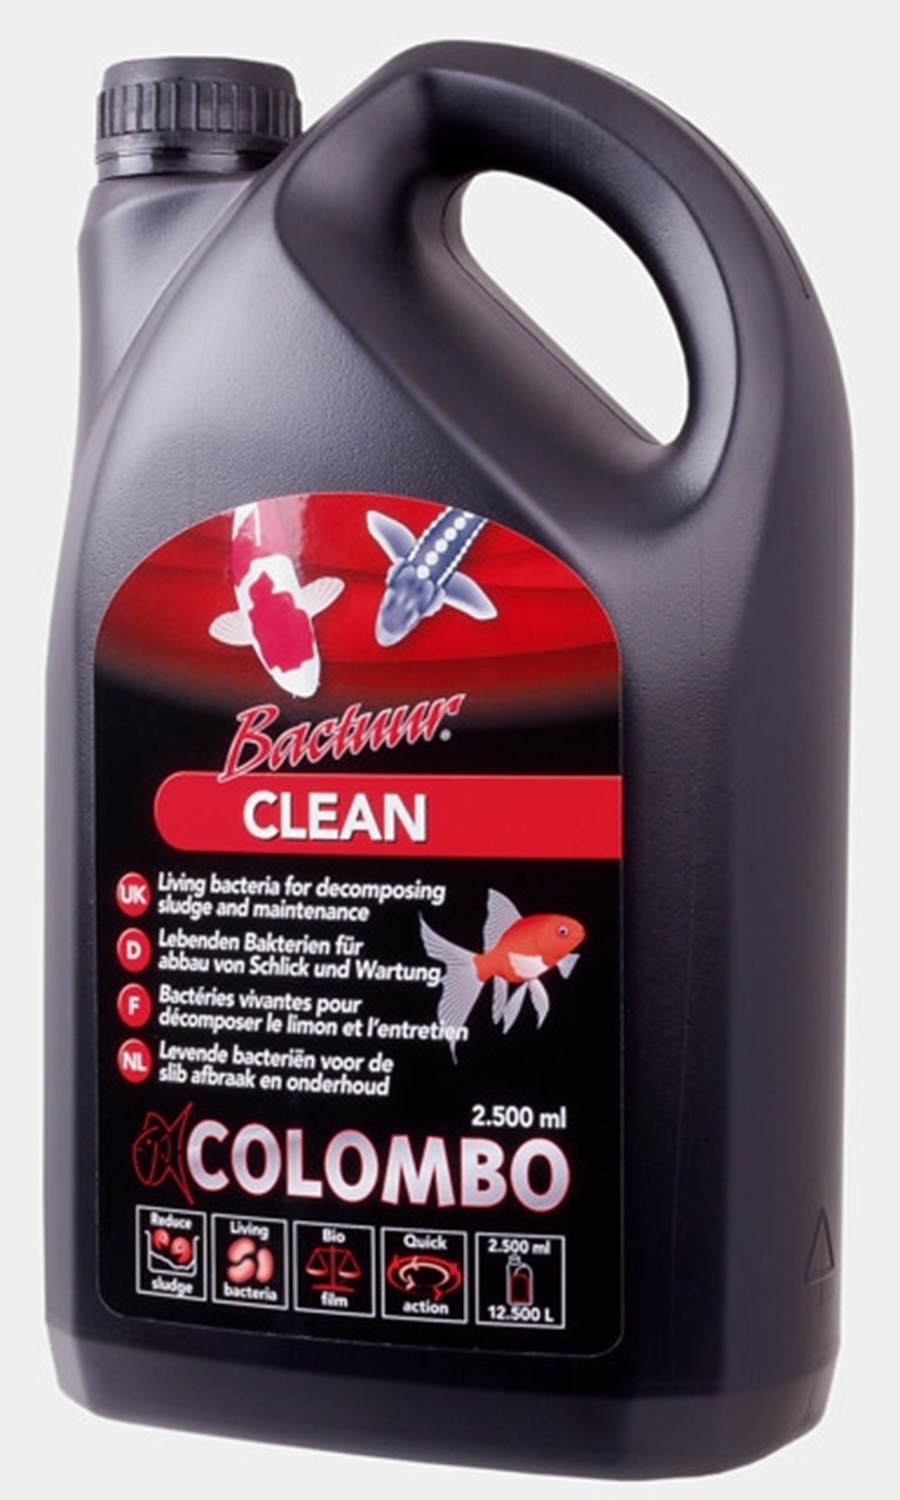 COLOMBO BACTUUR CLEAN SLUDGE 2500ML pour 12.500 litres